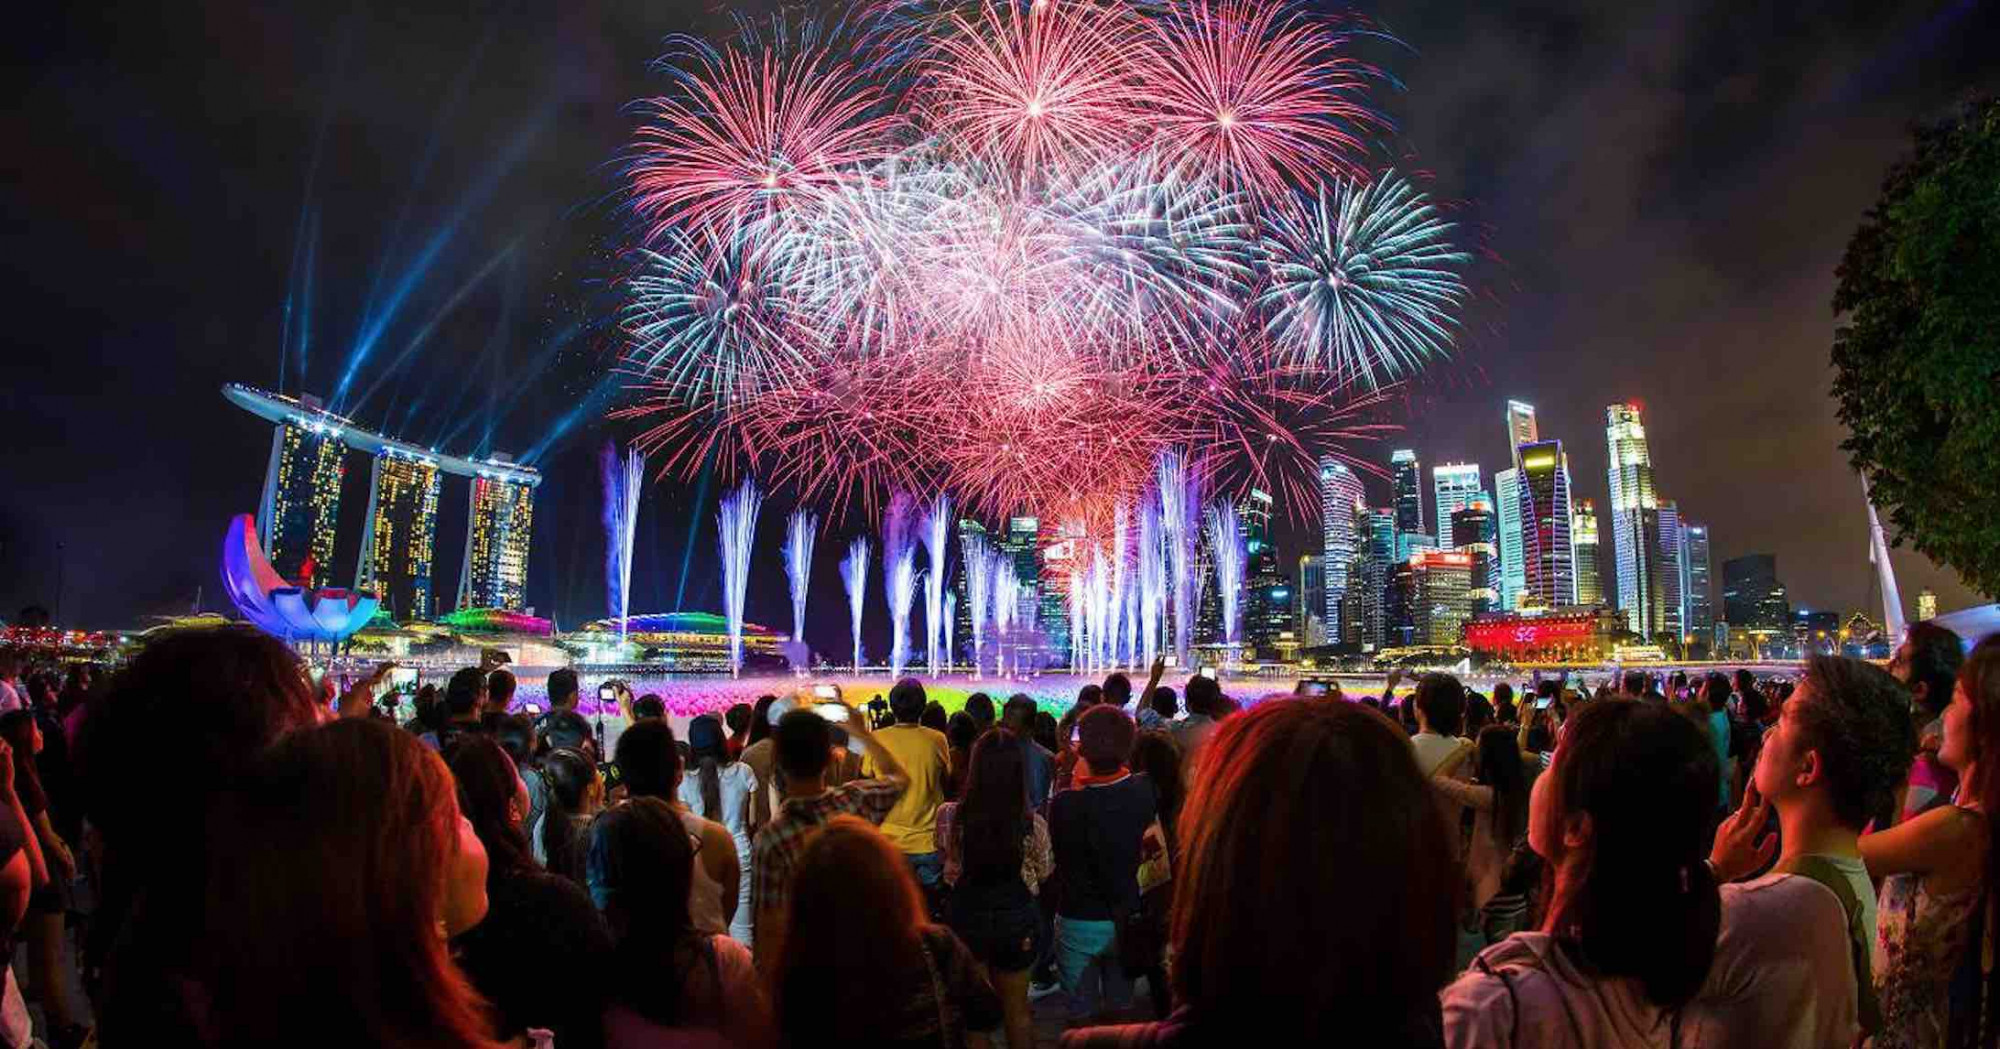 Tại Singapore , người ta có thể chứng kiến ​​sự kết hợp sôi động giữa các nền văn hóa, sắc tộc, cộng đồng và quan trọng nhất là con người. Nơi này là một gói hoàn chỉnh đầy hứng thú, bất ngờ và quyến rũ. Vì vậy, đây là một ý tưởng - tại sao không dành năm mới ở Singapore? Hãy sẵn sàng bước vào năm mới với những lễ kỷ niệm hoành tráng tại Thành phố Sư tử! Danh sách này tập hợp các điểm đến hàng đầu để tổ chức bữa tiệc đó. Cho dù đó là một bữa tiệc khiêu vũ trên bãi biển với đội của bạn hay một bữa tiệc đếm ngược trên sân thượng, Singapore có mọi lựa chọn mà bạn có thể nghĩ đến. 1. Đếm Ngược Vịnh Marina Singapore Marina Bay Singapore Đếm Ngược Năm Mới ở Singapore Marina Bay Countdown Party ( nguồn ) Còn cách nào tốt hơn để ăn mừng và tận hưởng năm mới ở Singapore hơn là đến Marina Bay Sands quyến rũ? Với một số màn pháo hoa rực rỡ, quả là một lễ hội chào đón năm mới với màn đếm ngược tại đây. Bạn có thể chọn một số địa điểm đếm ngược nổi tiếng như Bảo tàng Khoa học Nghệ thuật, Trung tâm Tài chính Mở, Khách sạn Fullerton Bay, Merlion, v.v. Âm nhạc, ánh sáng, tia laser, mọi thứ sẽ khiến bạn kinh ngạc trước cảnh tượng này và mang đến cho bạn một lễ hội như ý muốn vào đêm giao thừa. Vị trí : 10 đại lộ Bayfront 2. Tiệc bãi biển Siloso Tiệc bãi biển Siloso đón năm mới ở Singapore Một đám người tiệc tùng ở bãi biển Siloso ( nguồn ) Còn cách nào tốt hơn để chào đón năm mới ở Singapore hơn là tiệc tùng hết mình và nhảy theo những bản nhạc EDM đầy kích thích? Không nơi nào ở Singapore làm điều đó tốt hơn bữa tiệc bãi biển Siloso nổi tiếng tại Sentosa. Sự kiện hào nhoáng, xa hoa này bắt đầu từ năm 2007 và tiếp tục thu hút hàng chục người tham gia tiệc tùng kể từ đó. Với màn pháo hoa ngoạn mục và bữa tiệc kéo dài 12 giờ diễn ra từ hoàng hôn đến bình minh, đây thường là cách ăn mừng năm mới được quảng cáo rầm rộ ở Singapore. Các đặc quyền VIP được mở rộng trong sự kiện sẽ nâng cao chỉ số của nhóm bằng cách cho phép mọi người có quyền truy cập ưu tiên vào nhóm và quyền truy cập độc quyền vào lều VIP.   Địa điểm : Bãi biển Siloso, Sentosa Thời lượng : 12 giờ Thời gian : 6:00 chiều - 6:00 sáng (xấp xỉ) Giá : Earlybird (8-31 tháng 10) - 48 SGD Đặt phòng nâng cao (1 tháng 11 - 26 tháng 12): 58 SGD Đặt phòng tiêu chuẩn (27 tháng 10) Tháng 12-ngày 1 tháng 1): 68 SGD VIP: 108 SGD 3. Ngôi nhà sóng Sentosa Wave House Sentosa, đón năm mới ở Singapore Wave House Sentosa thanh bình ( nguồn ) Một bữa tiệc kéo dài 12 giờ với 12 DJ chơi nhạc dồn dập không ngừng là một cách tuyệt vời để đón giao thừa. Bữa tiệc tại Wave House cung cấp 12 loại đồ uống miễn phí xứng đáng với thời gian và tiền bạc của bạn. Với sự góp mặt của một số nghệ sĩ trong nước và quốc tế, bữa tiệc dường như chưa dừng lại ở đây, mang đến nhịp điệu được mong đợi cho một khởi đầu mới và một năm mới.